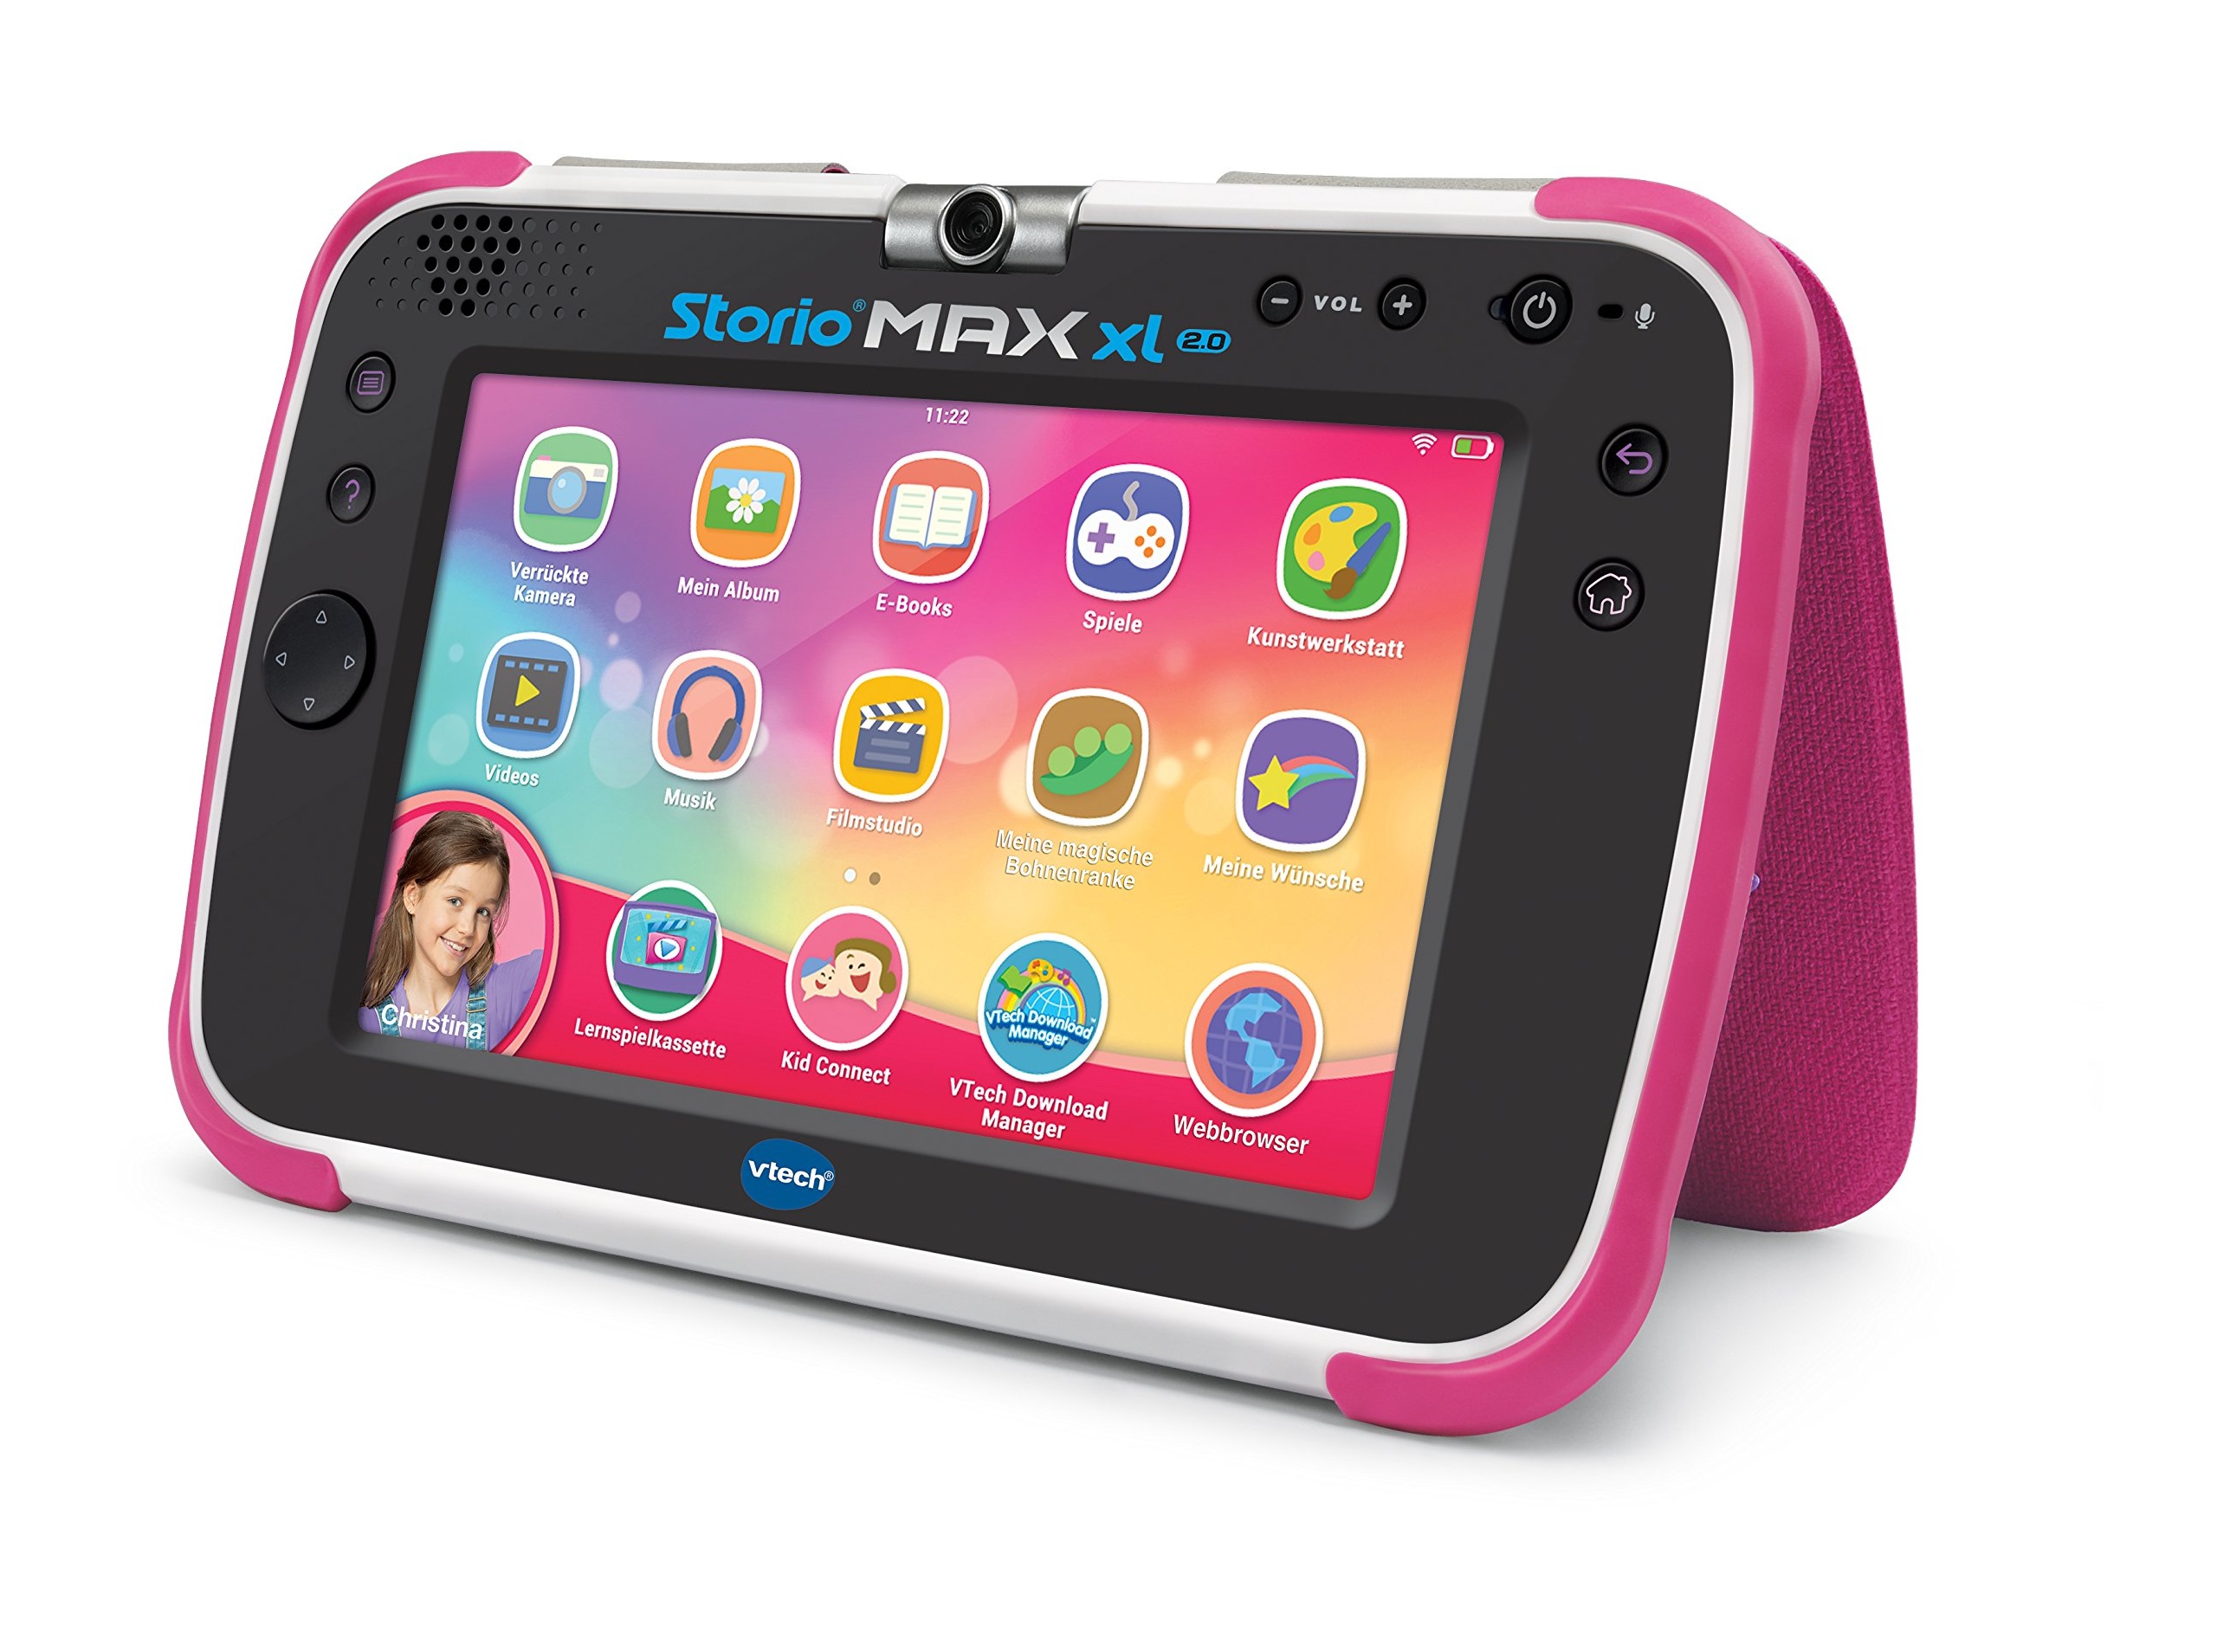 Bild Storio MAX XL 2.0 pink